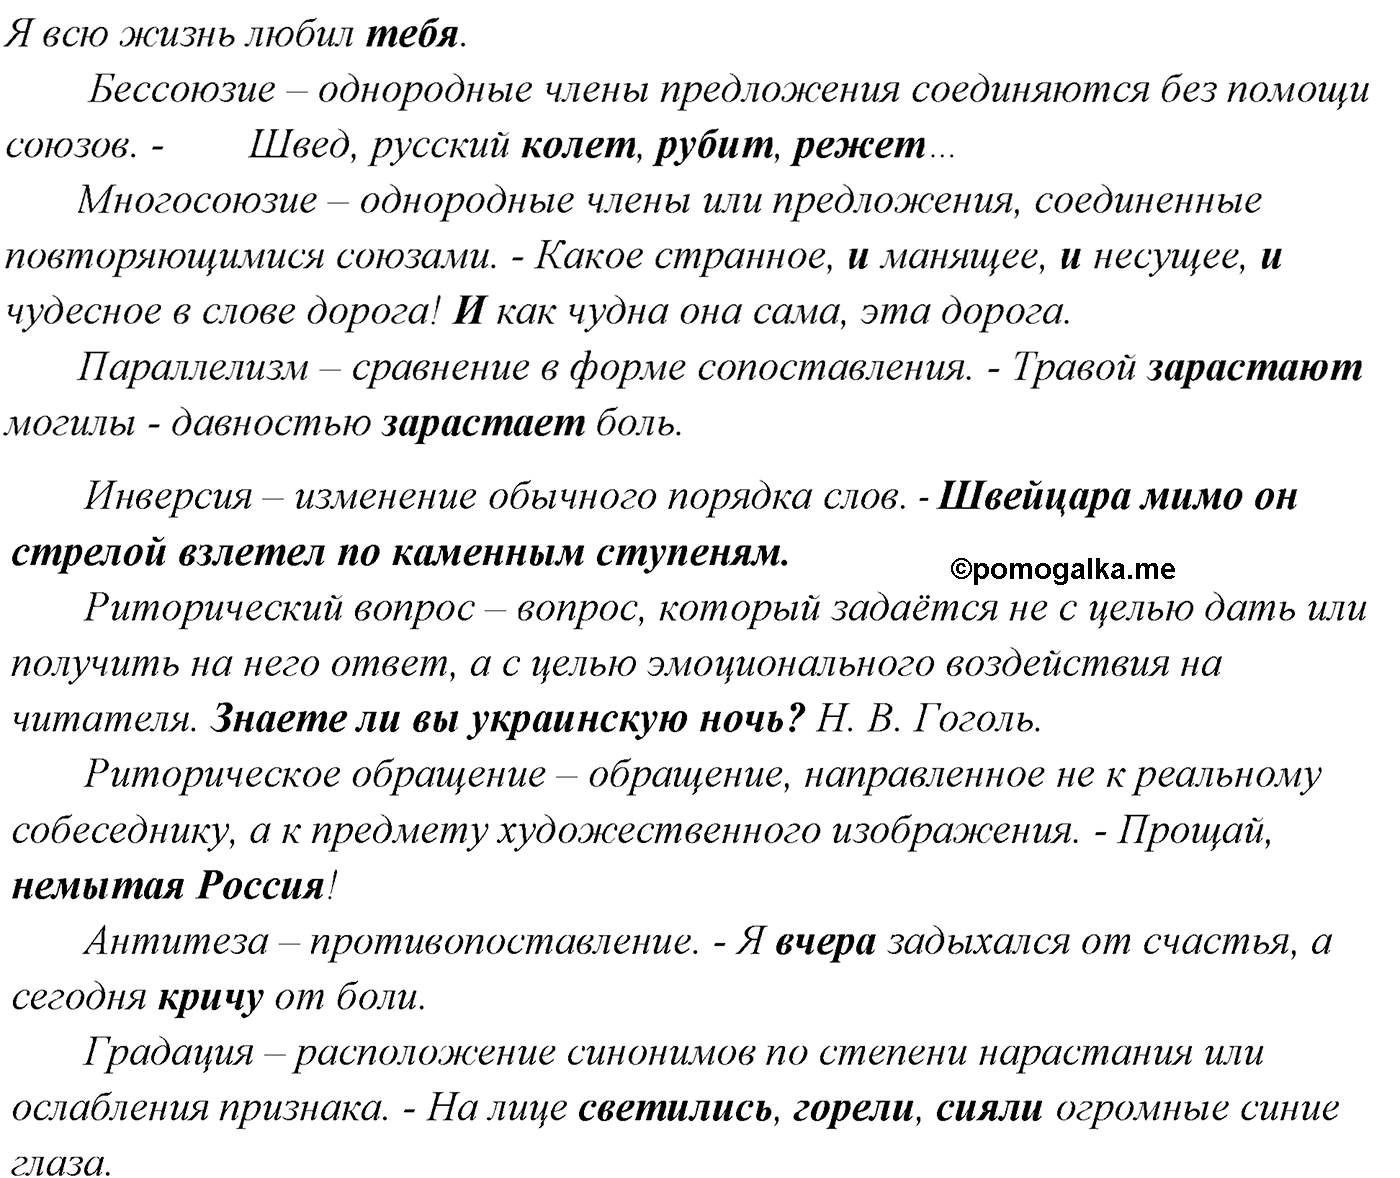 упражнение №254 русский язык 10-11 класс Власенков